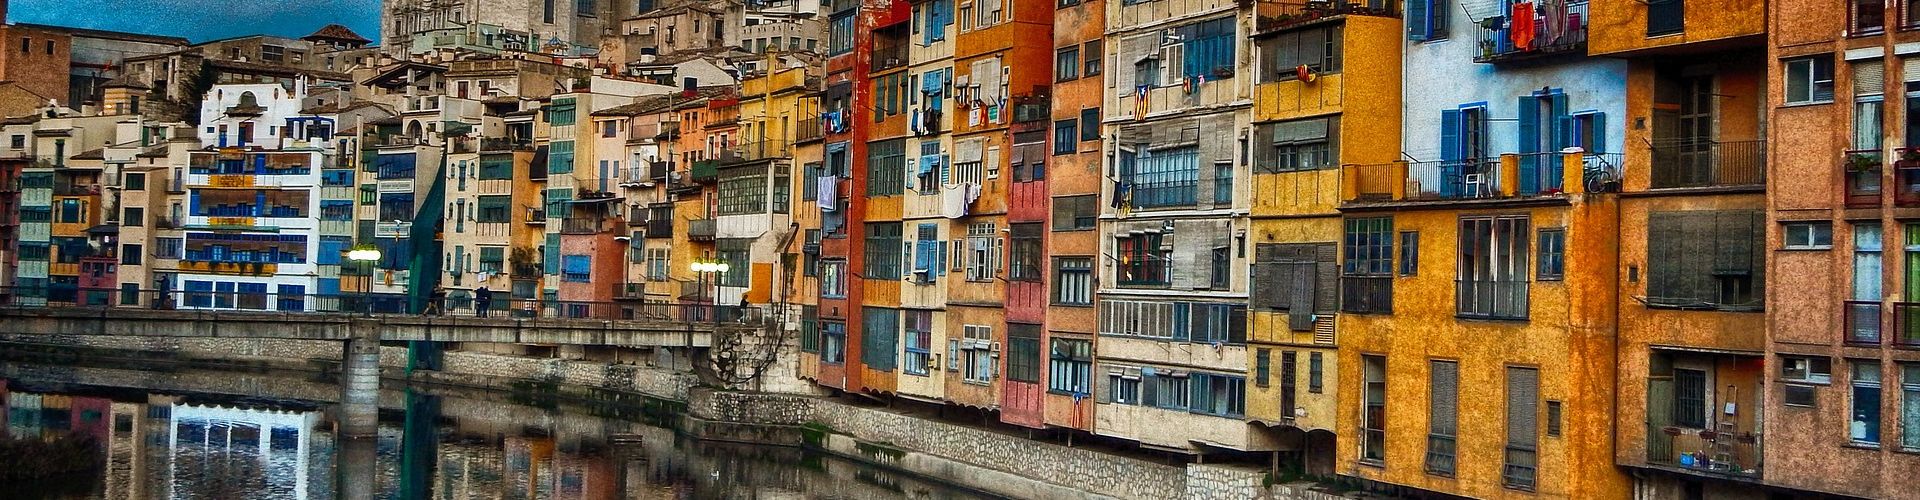 Girona Immeubles colorés